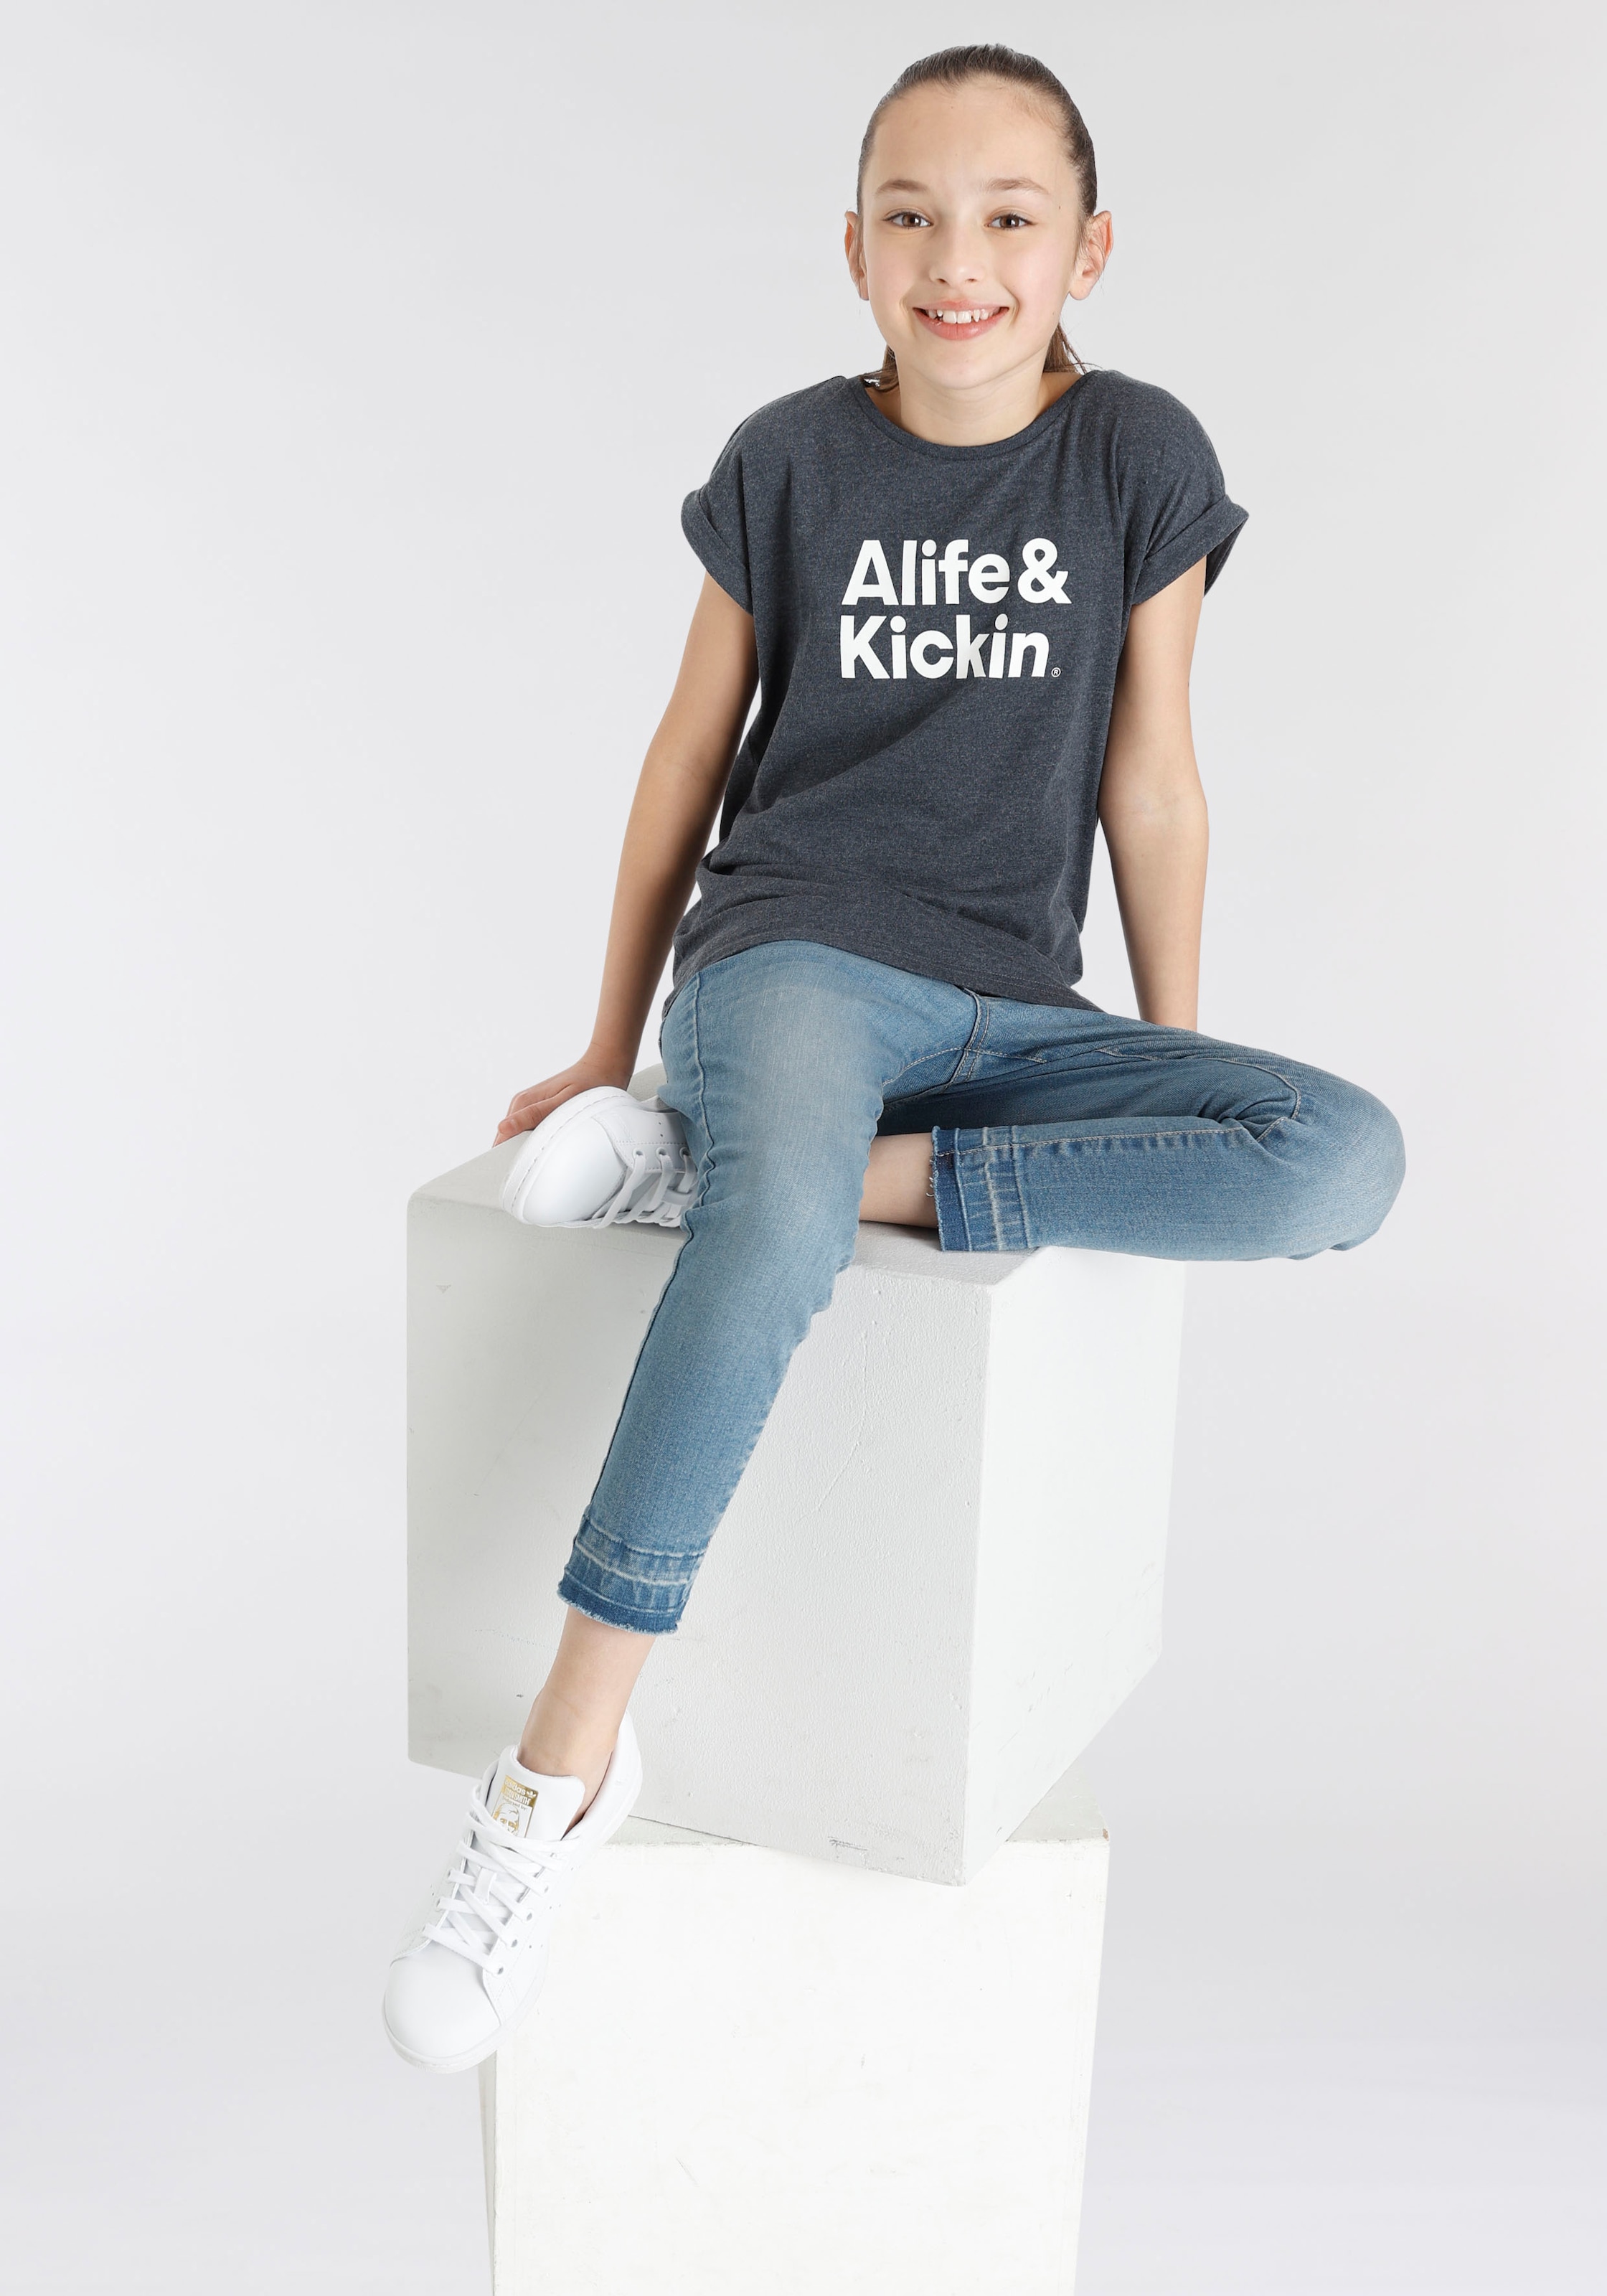 & bei für Kickin Druck«, OTTO T-Shirt Alife & Alife NEUE Logo Kickin Kids. »mit MARKE!